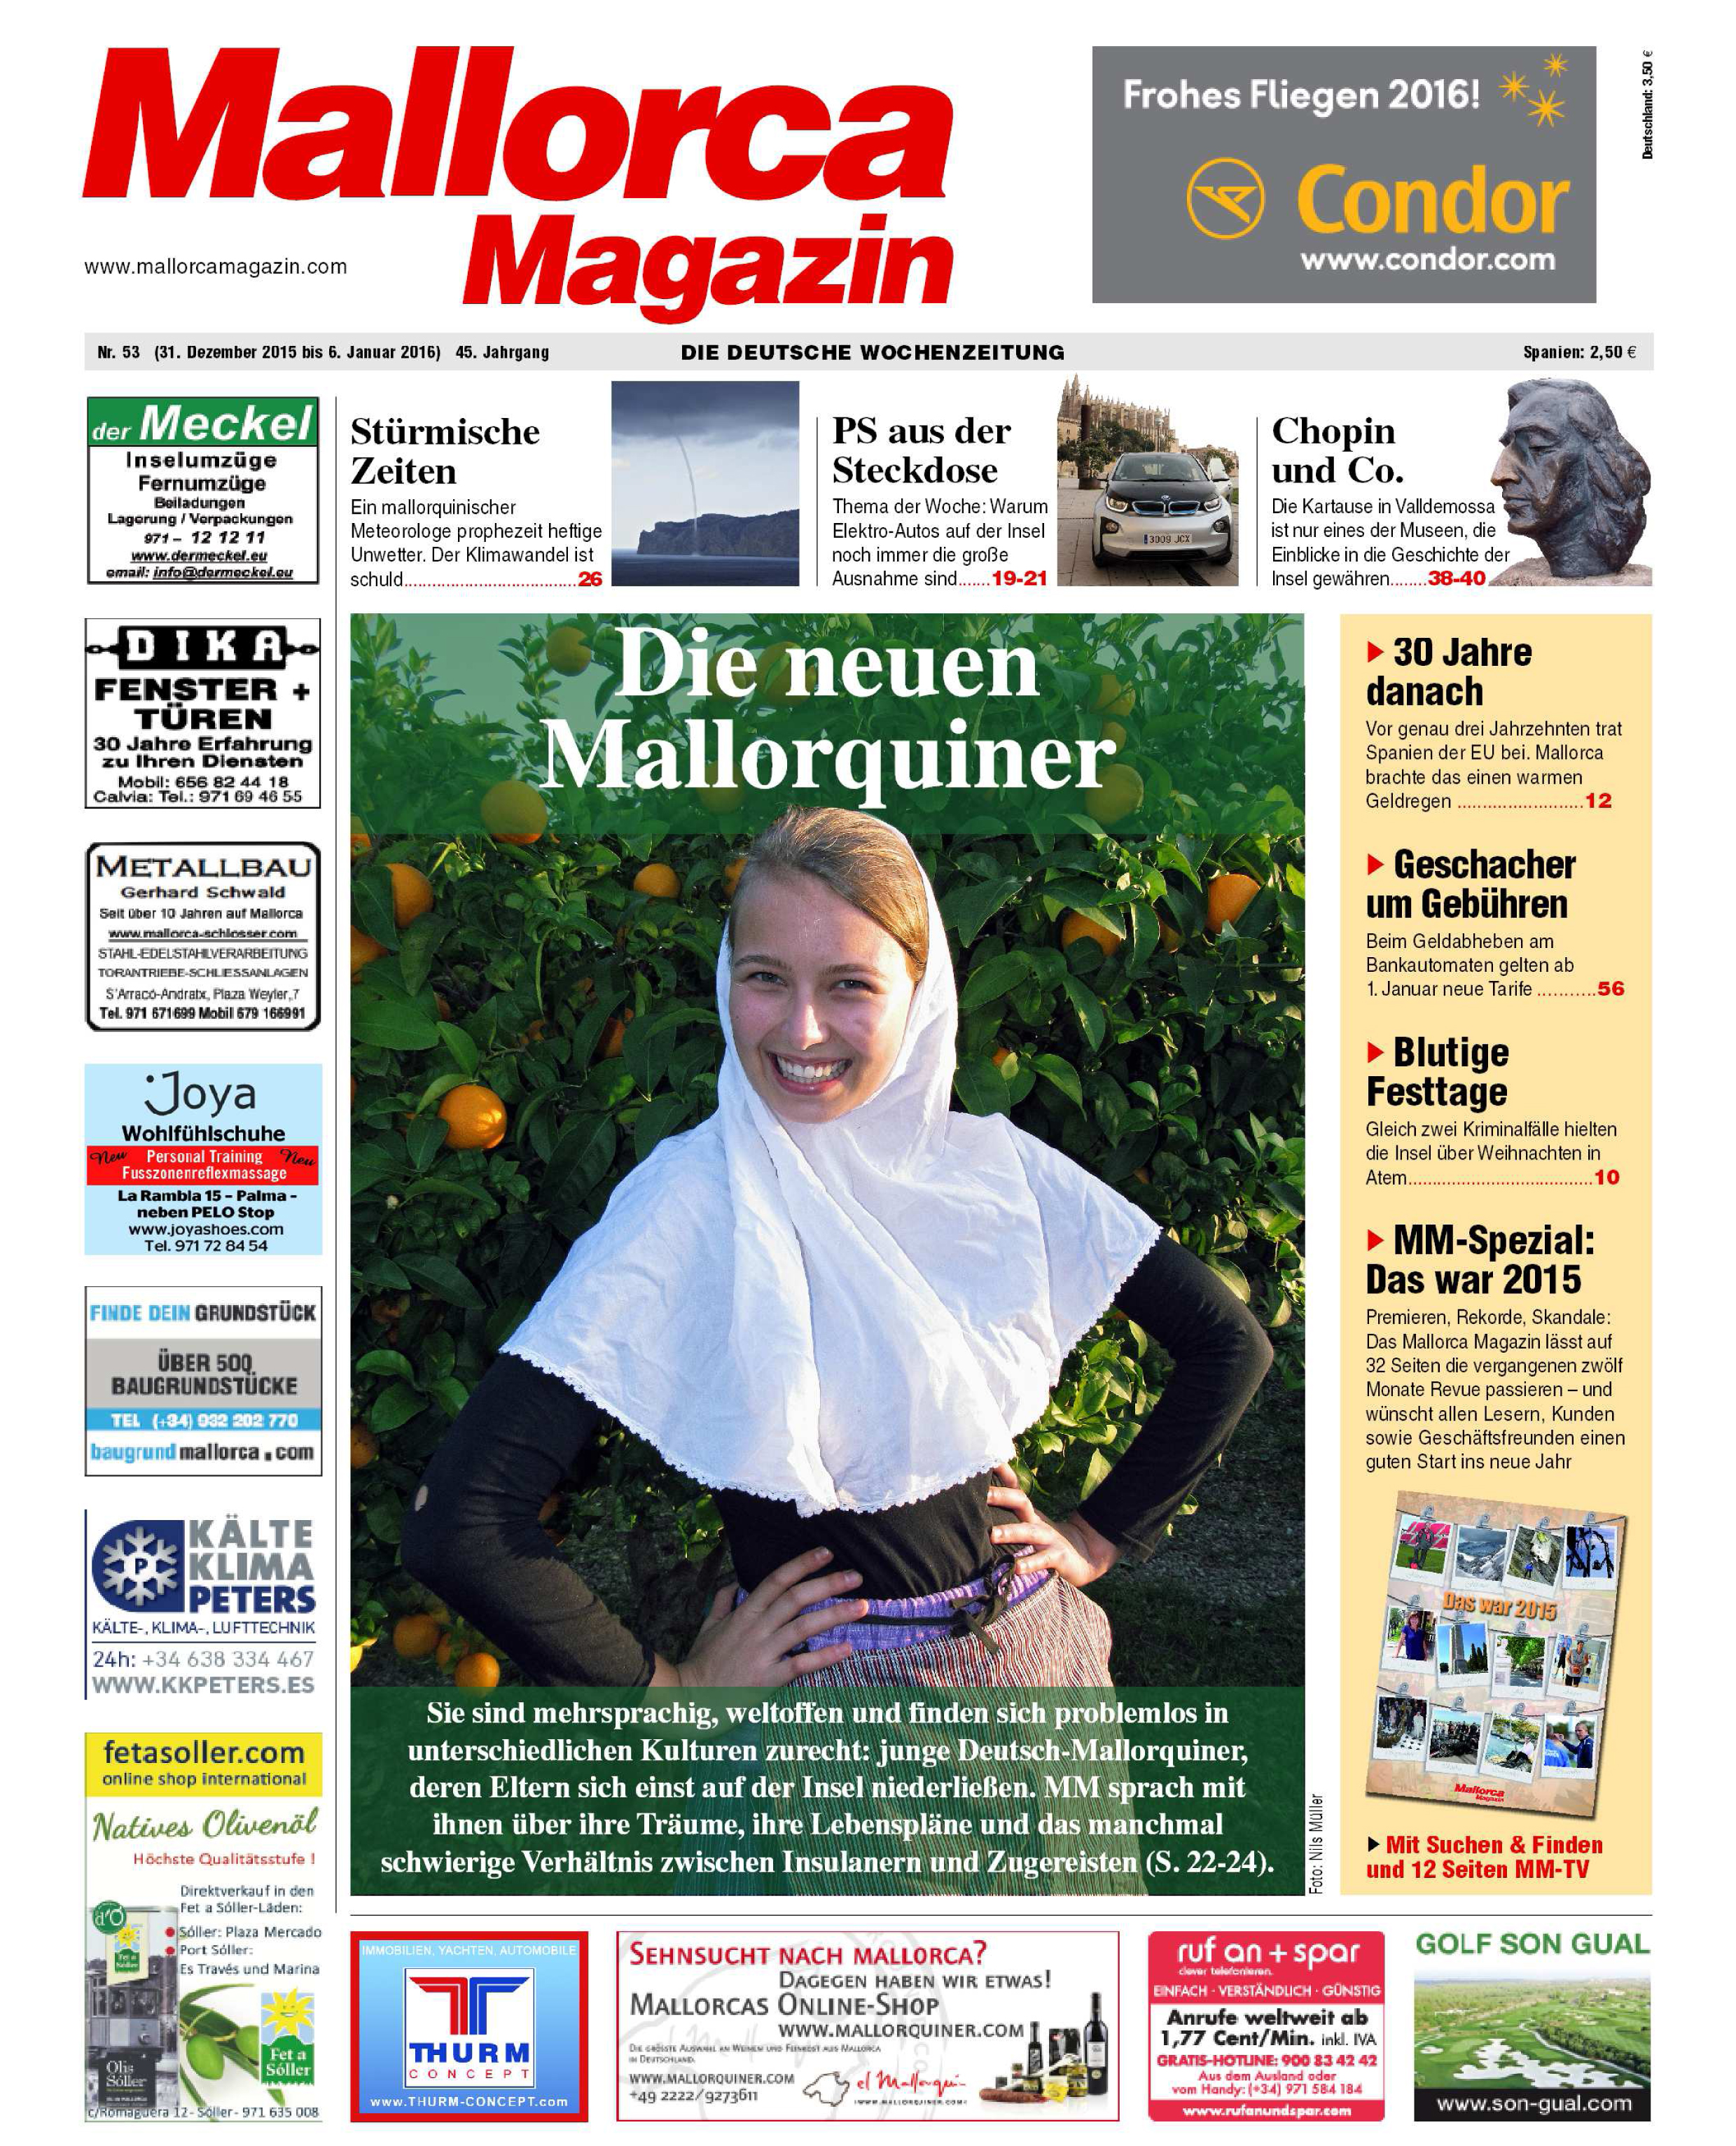 Die neuen Mallorquiner-Felicitas Prinzessin zu Stolberg-Wernigerode1